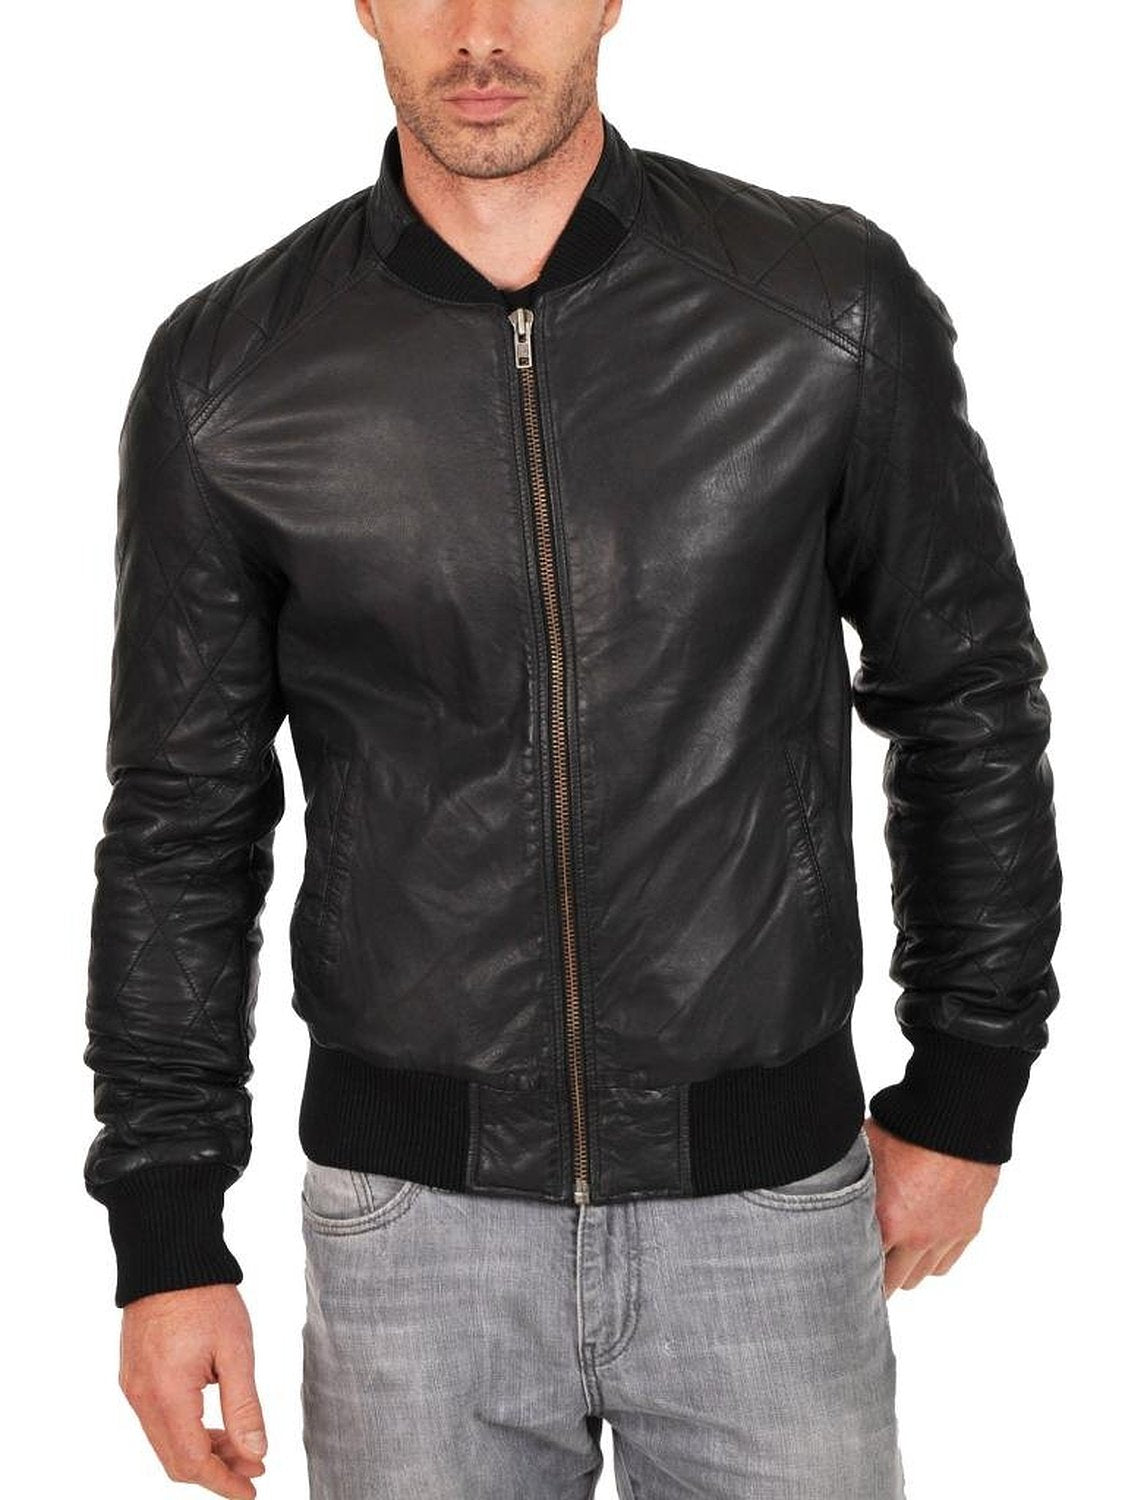 Leather Jackets Hub Mens Genuine Lambskin Leather Jacket (Black, Bomber Jacket) - 1501015